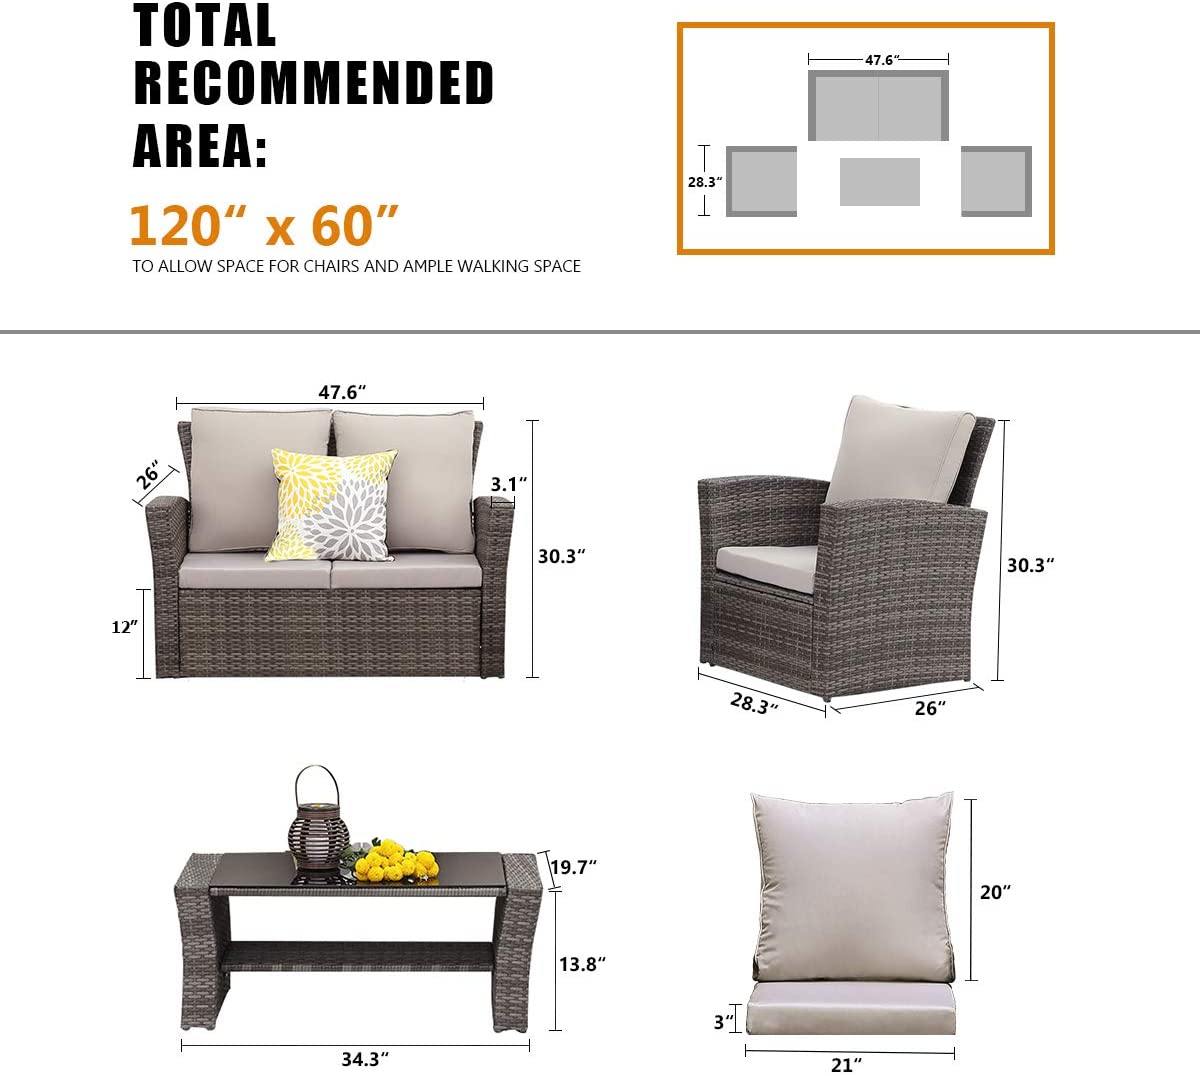 Lazio Rattan Garden Furniture Sofa Set - Mixed Grey Rattan / Dark Cushions Rattan Furniture MaxiFurn 